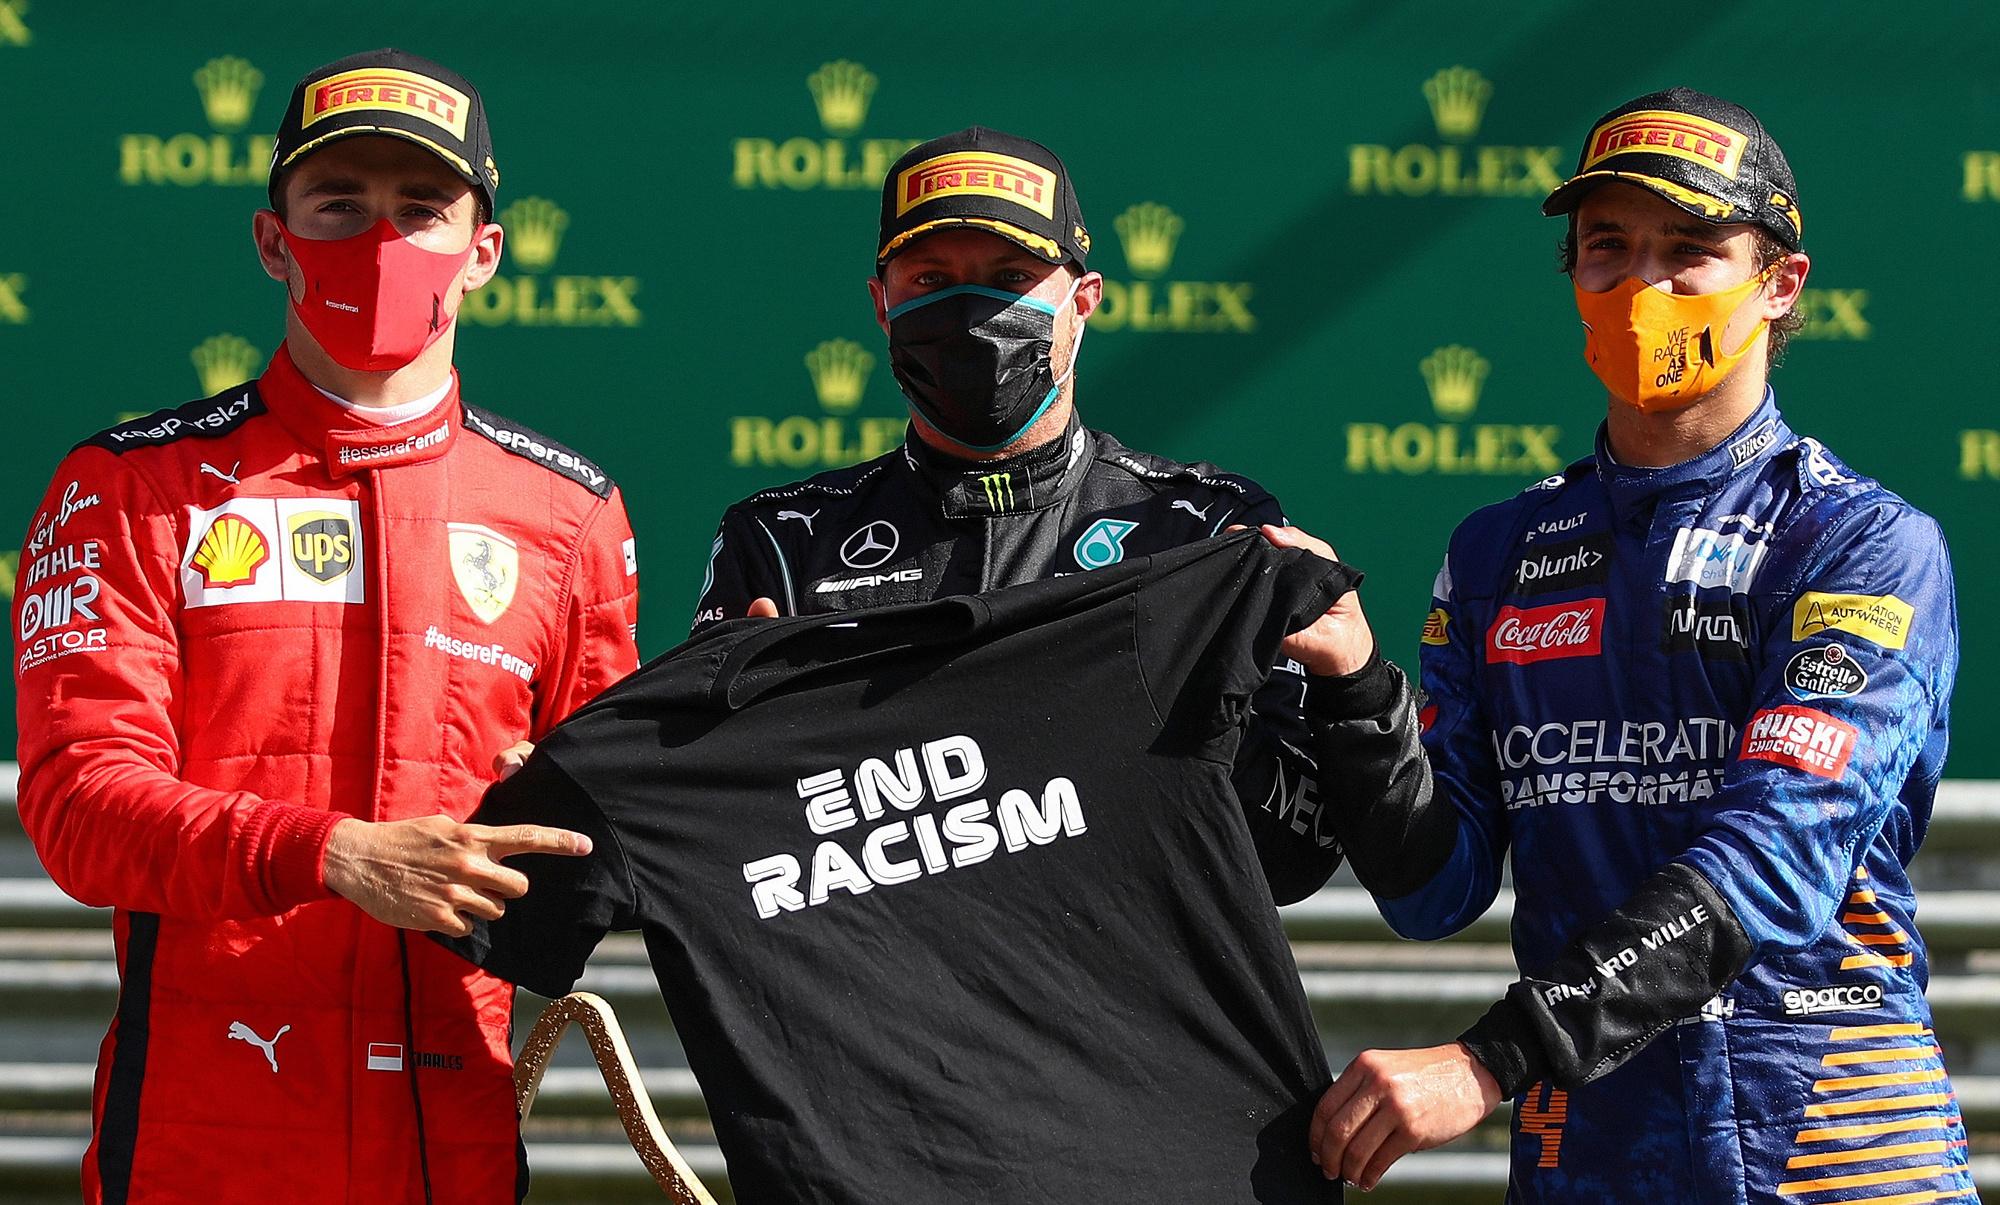 F1: Bottas premier vainqueur de 2020, sans public pour l'applaudir